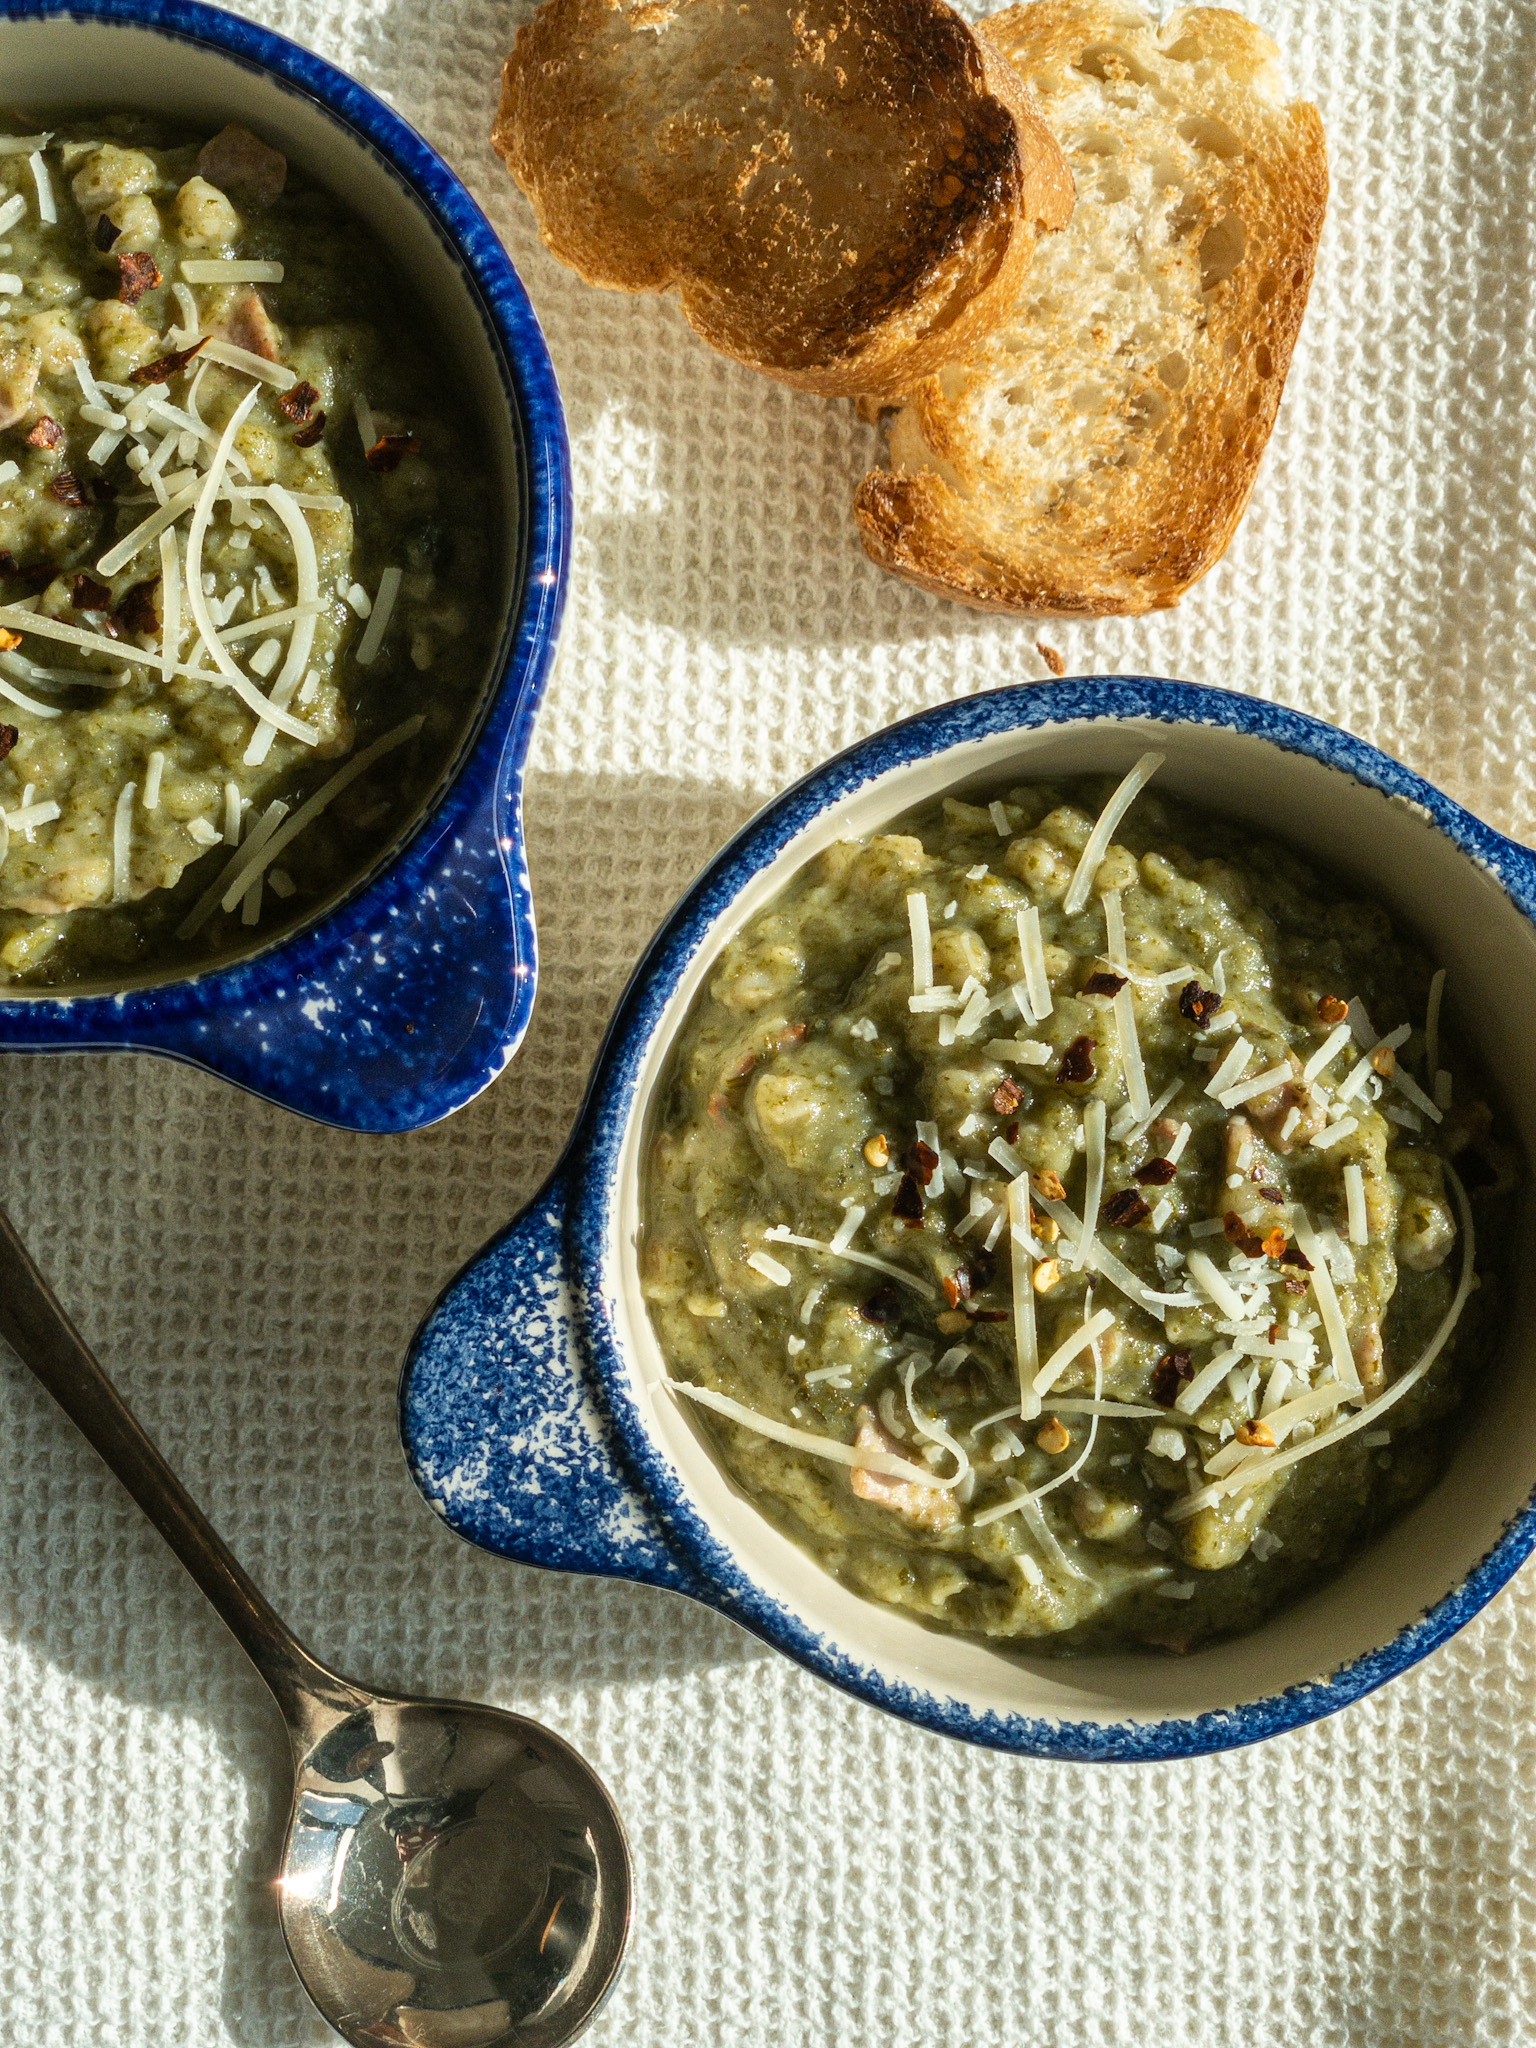 green pea soup